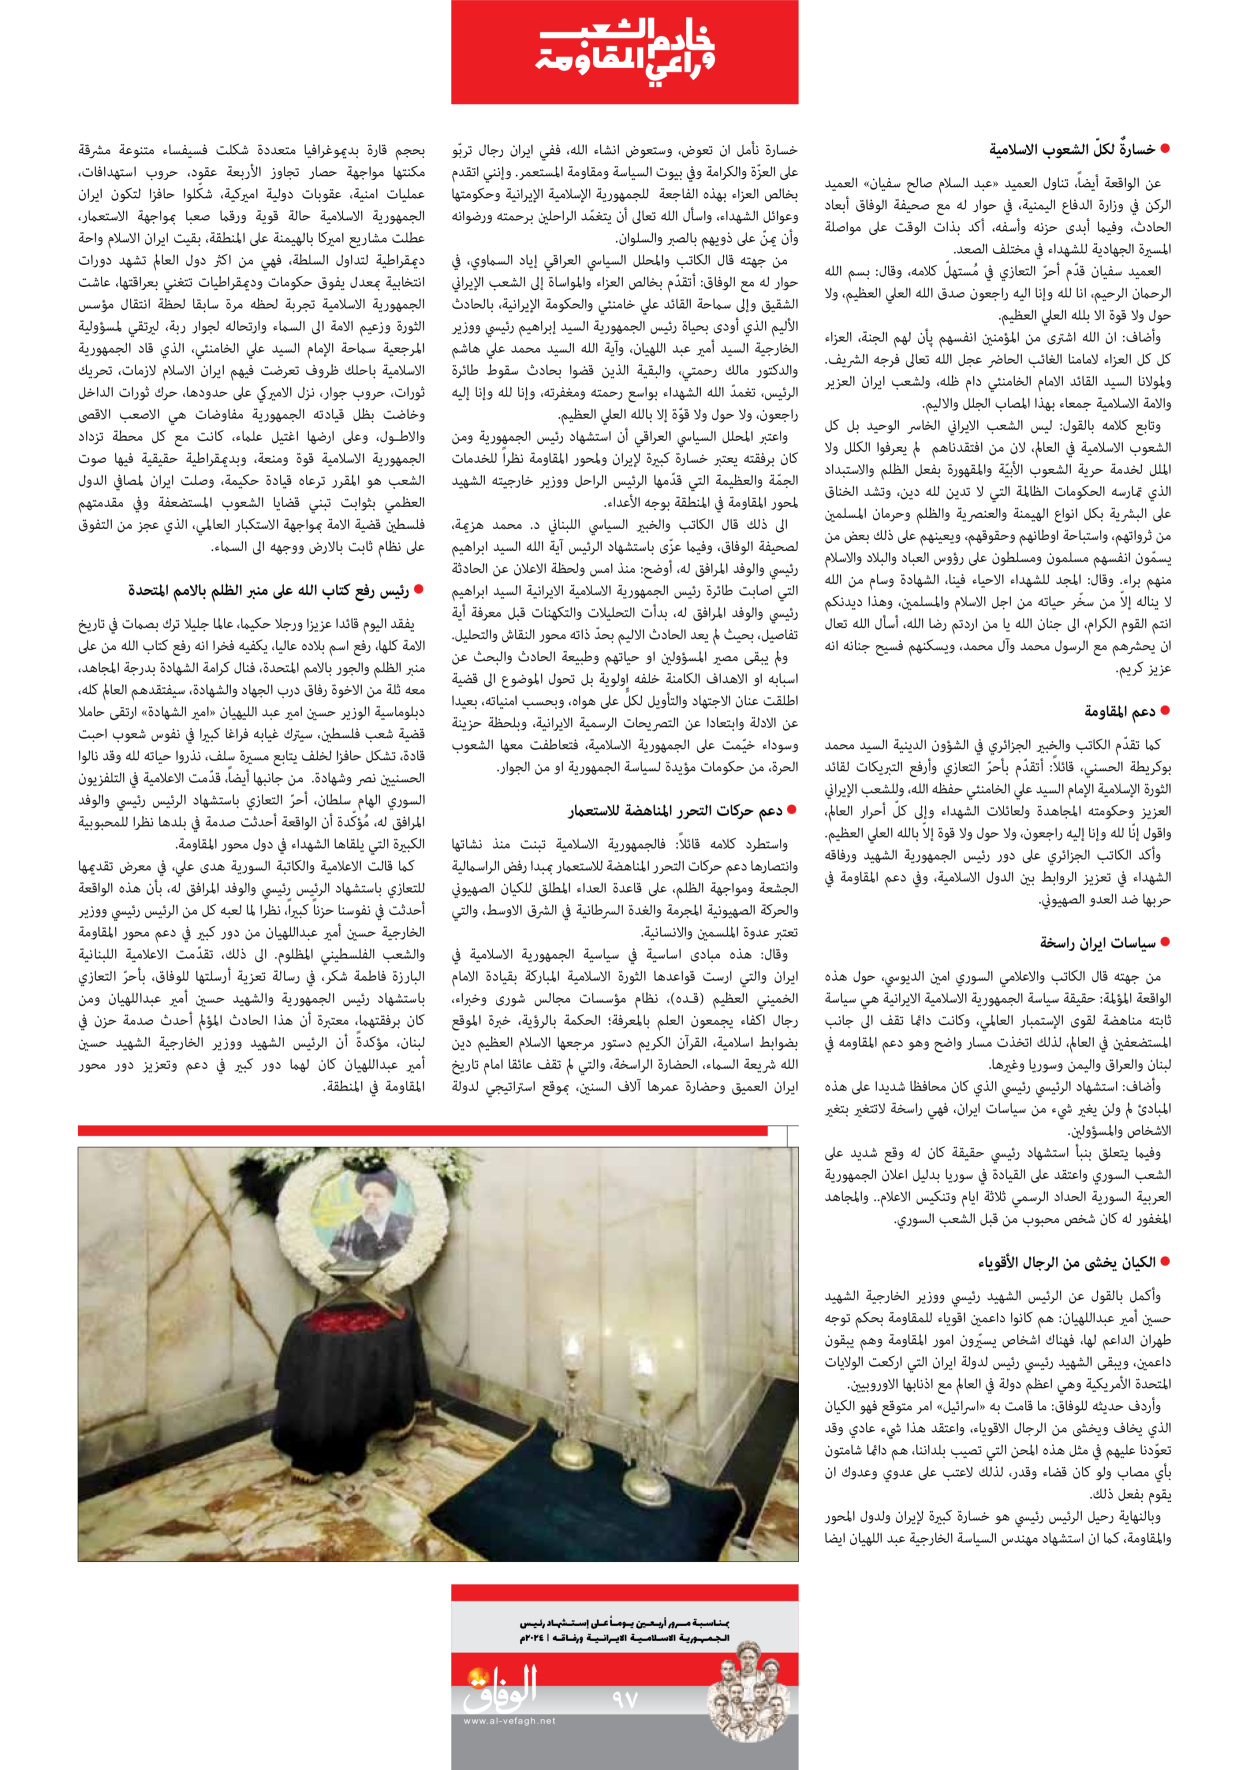 صحیفة ایران الدولیة الوفاق - ملحق ویژه نامه چهلم شهید رییسی - ٢٩ يونيو ٢٠٢٤ - الصفحة ۹٦